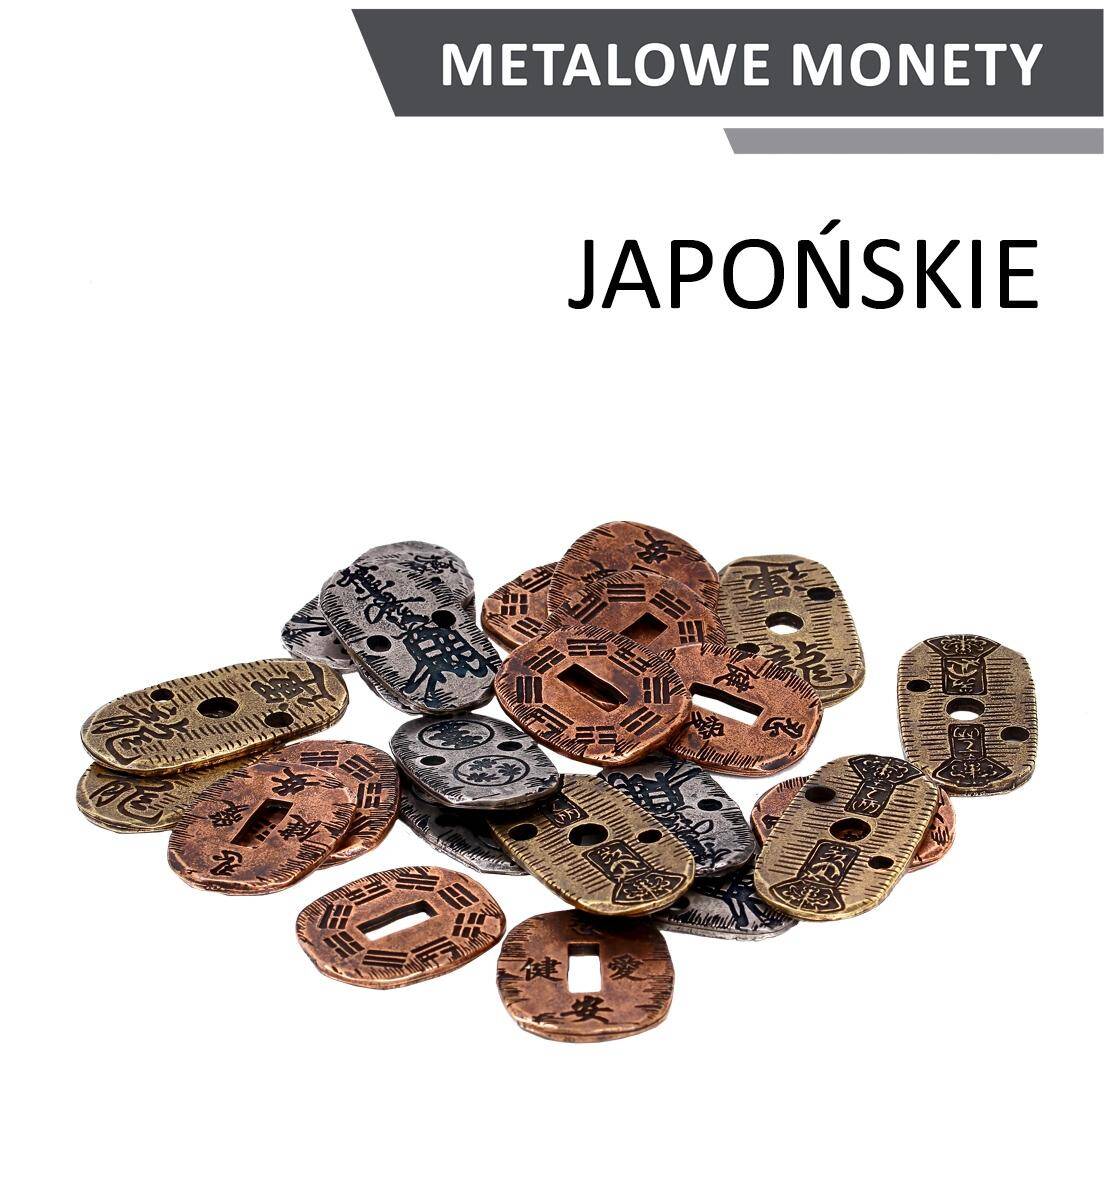 Metalowe monety japońskie zestaw 24 monet